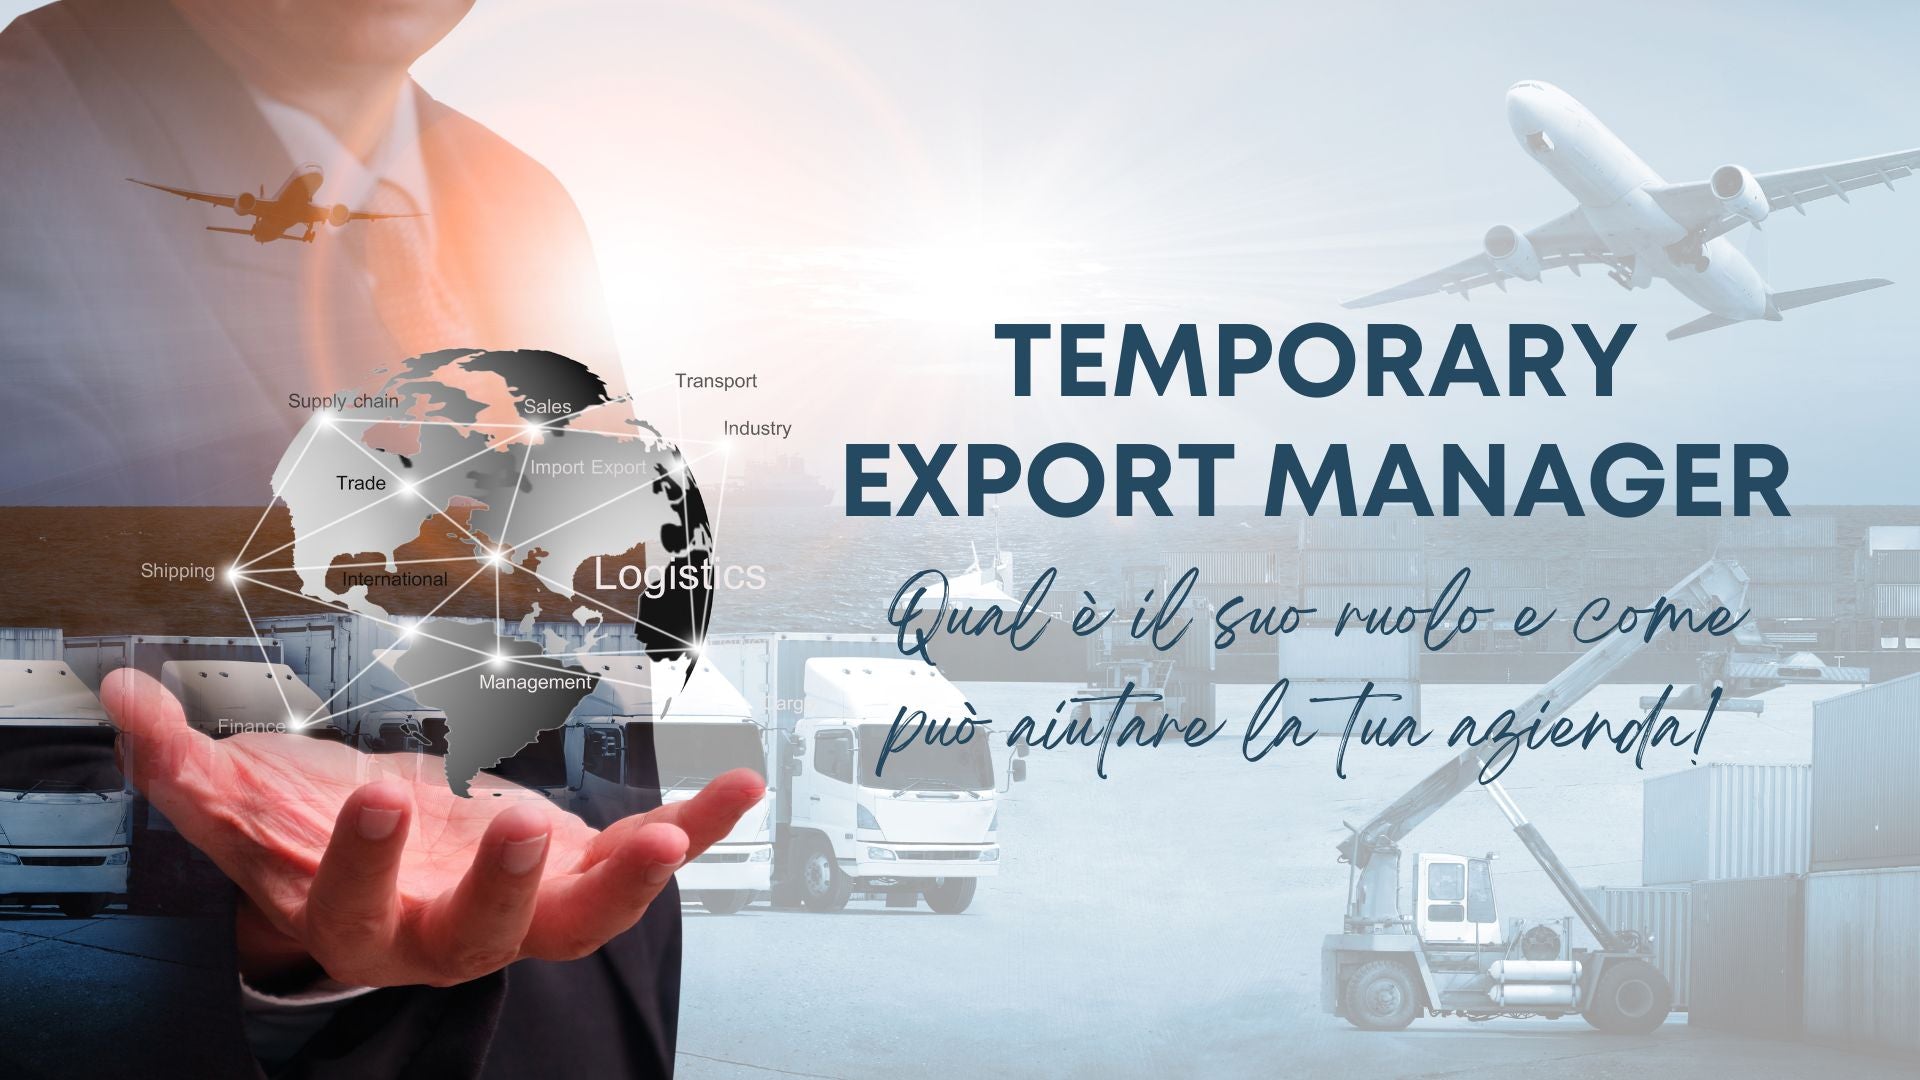 Temporary Export Manager: qual è il suo ruolo e come può aiutare la tua azienda!